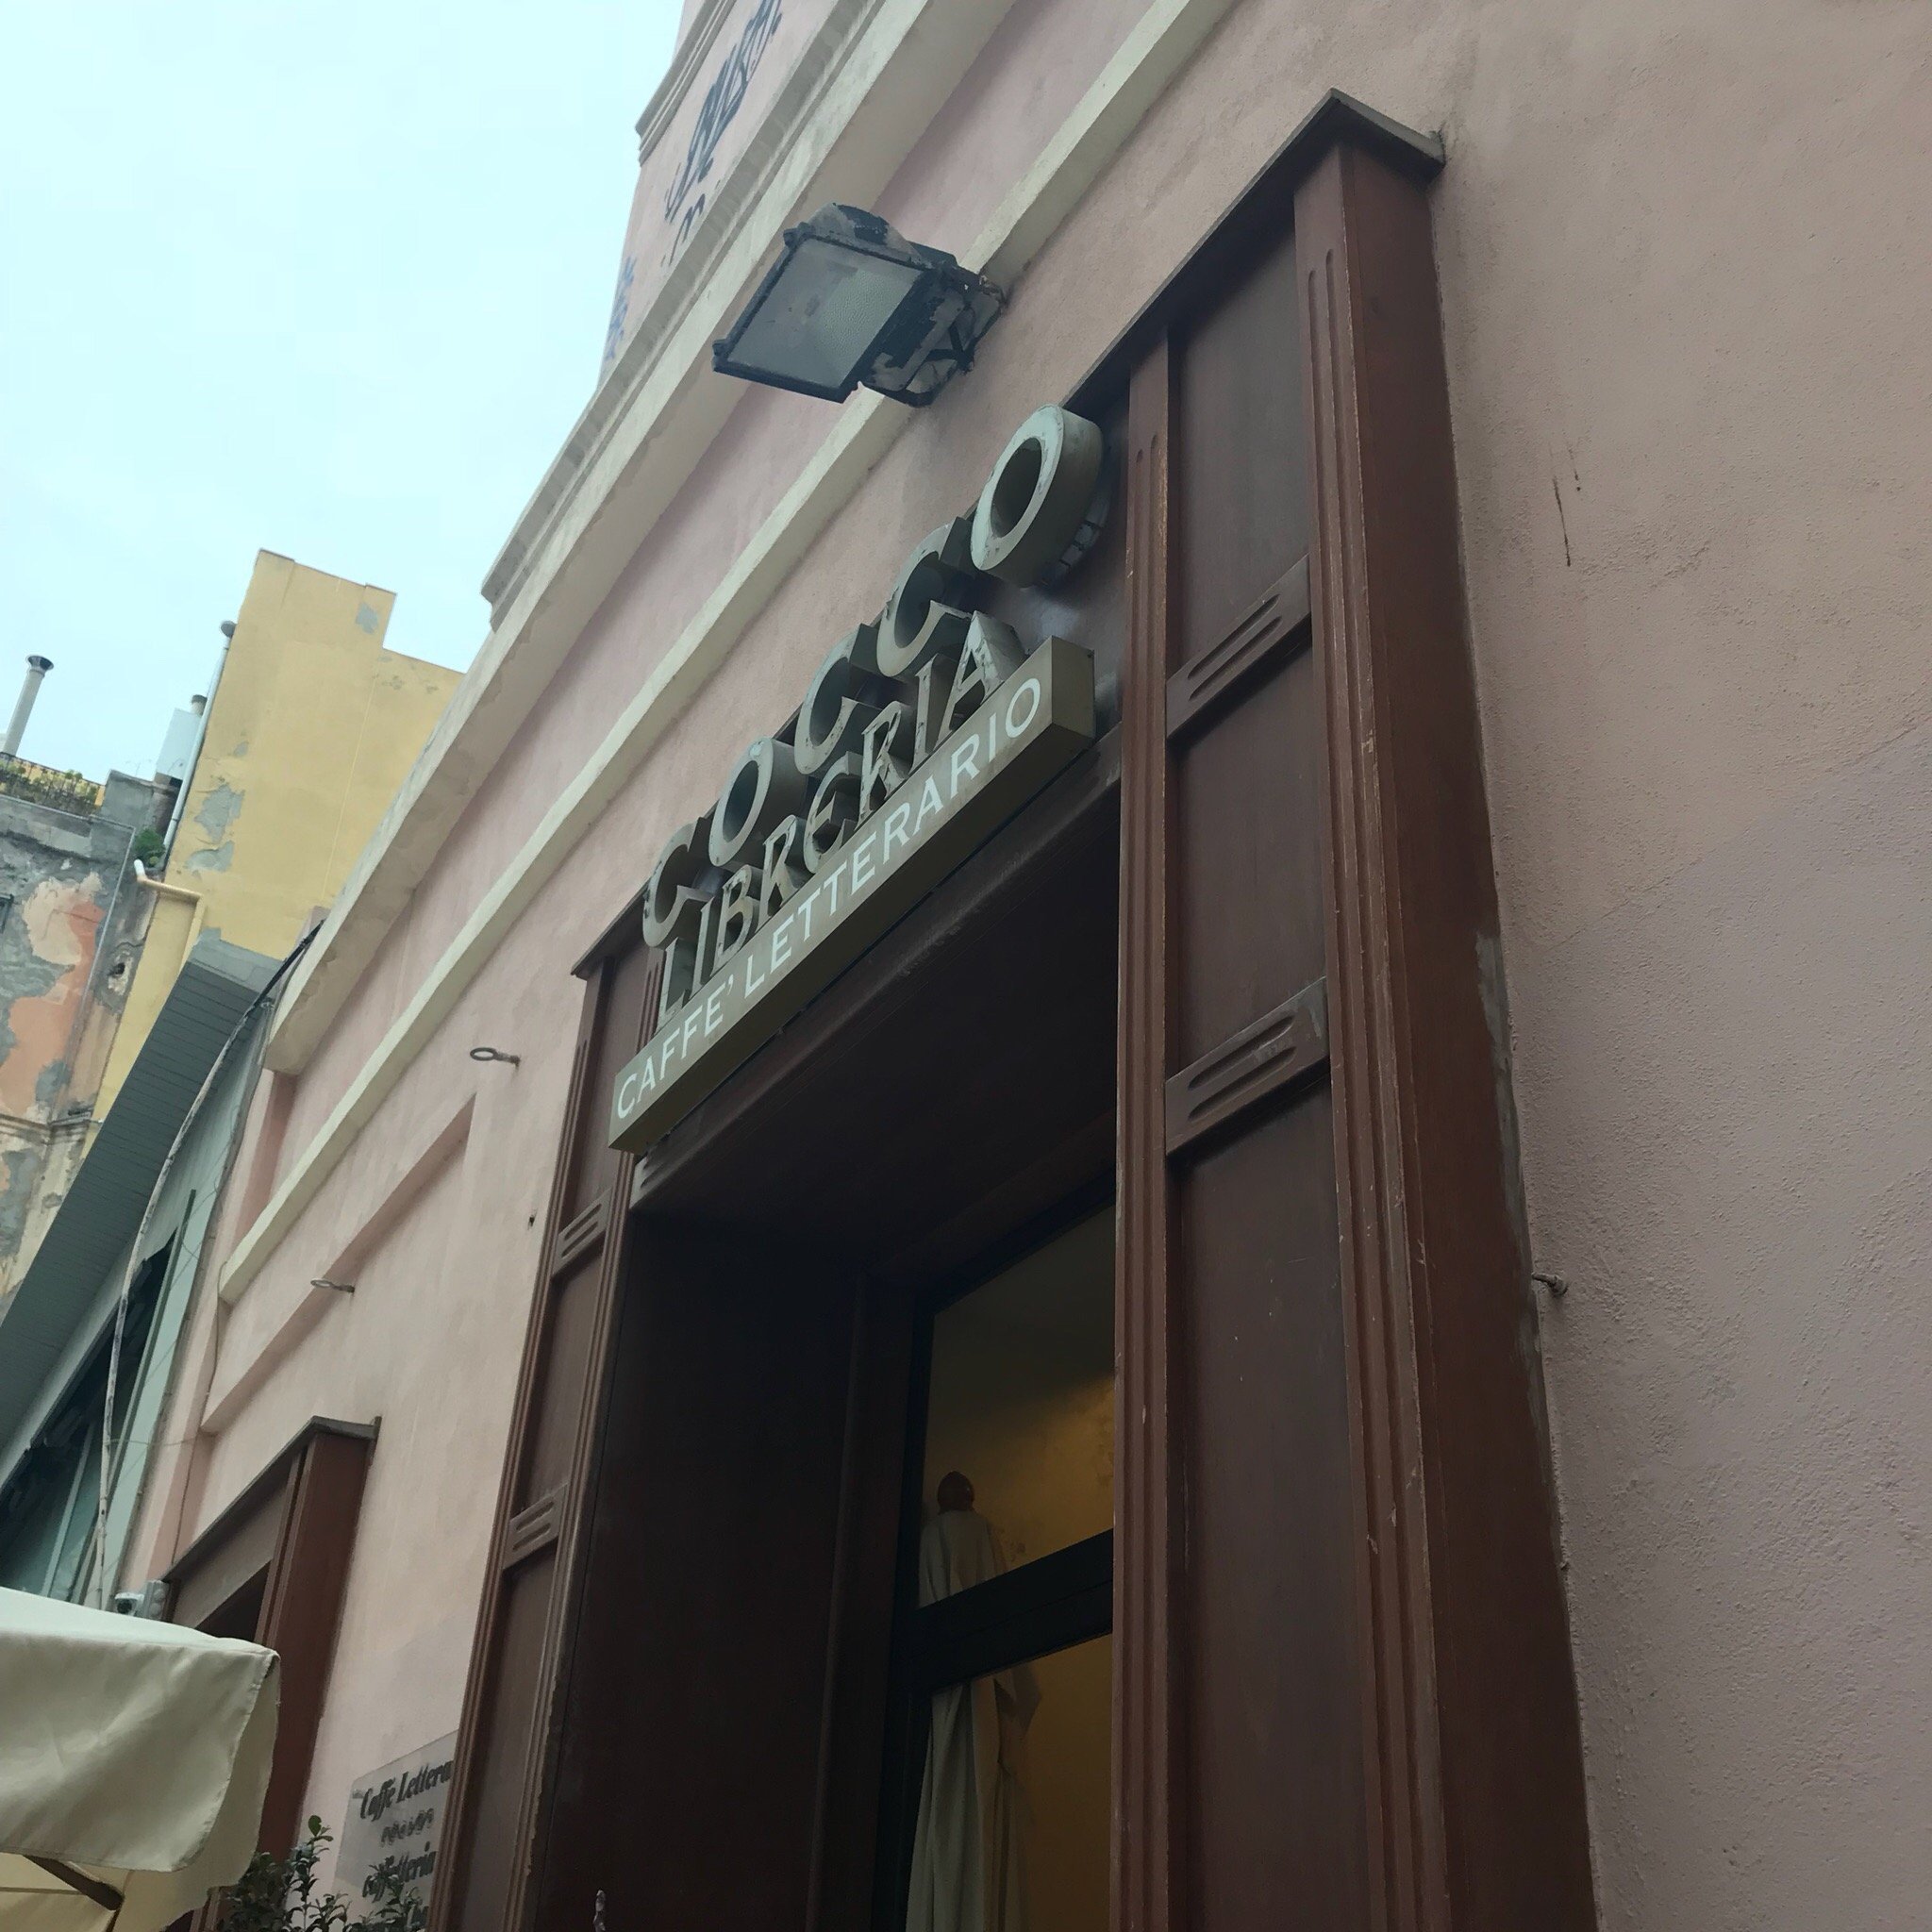 Caffè Letterario, Cagliari